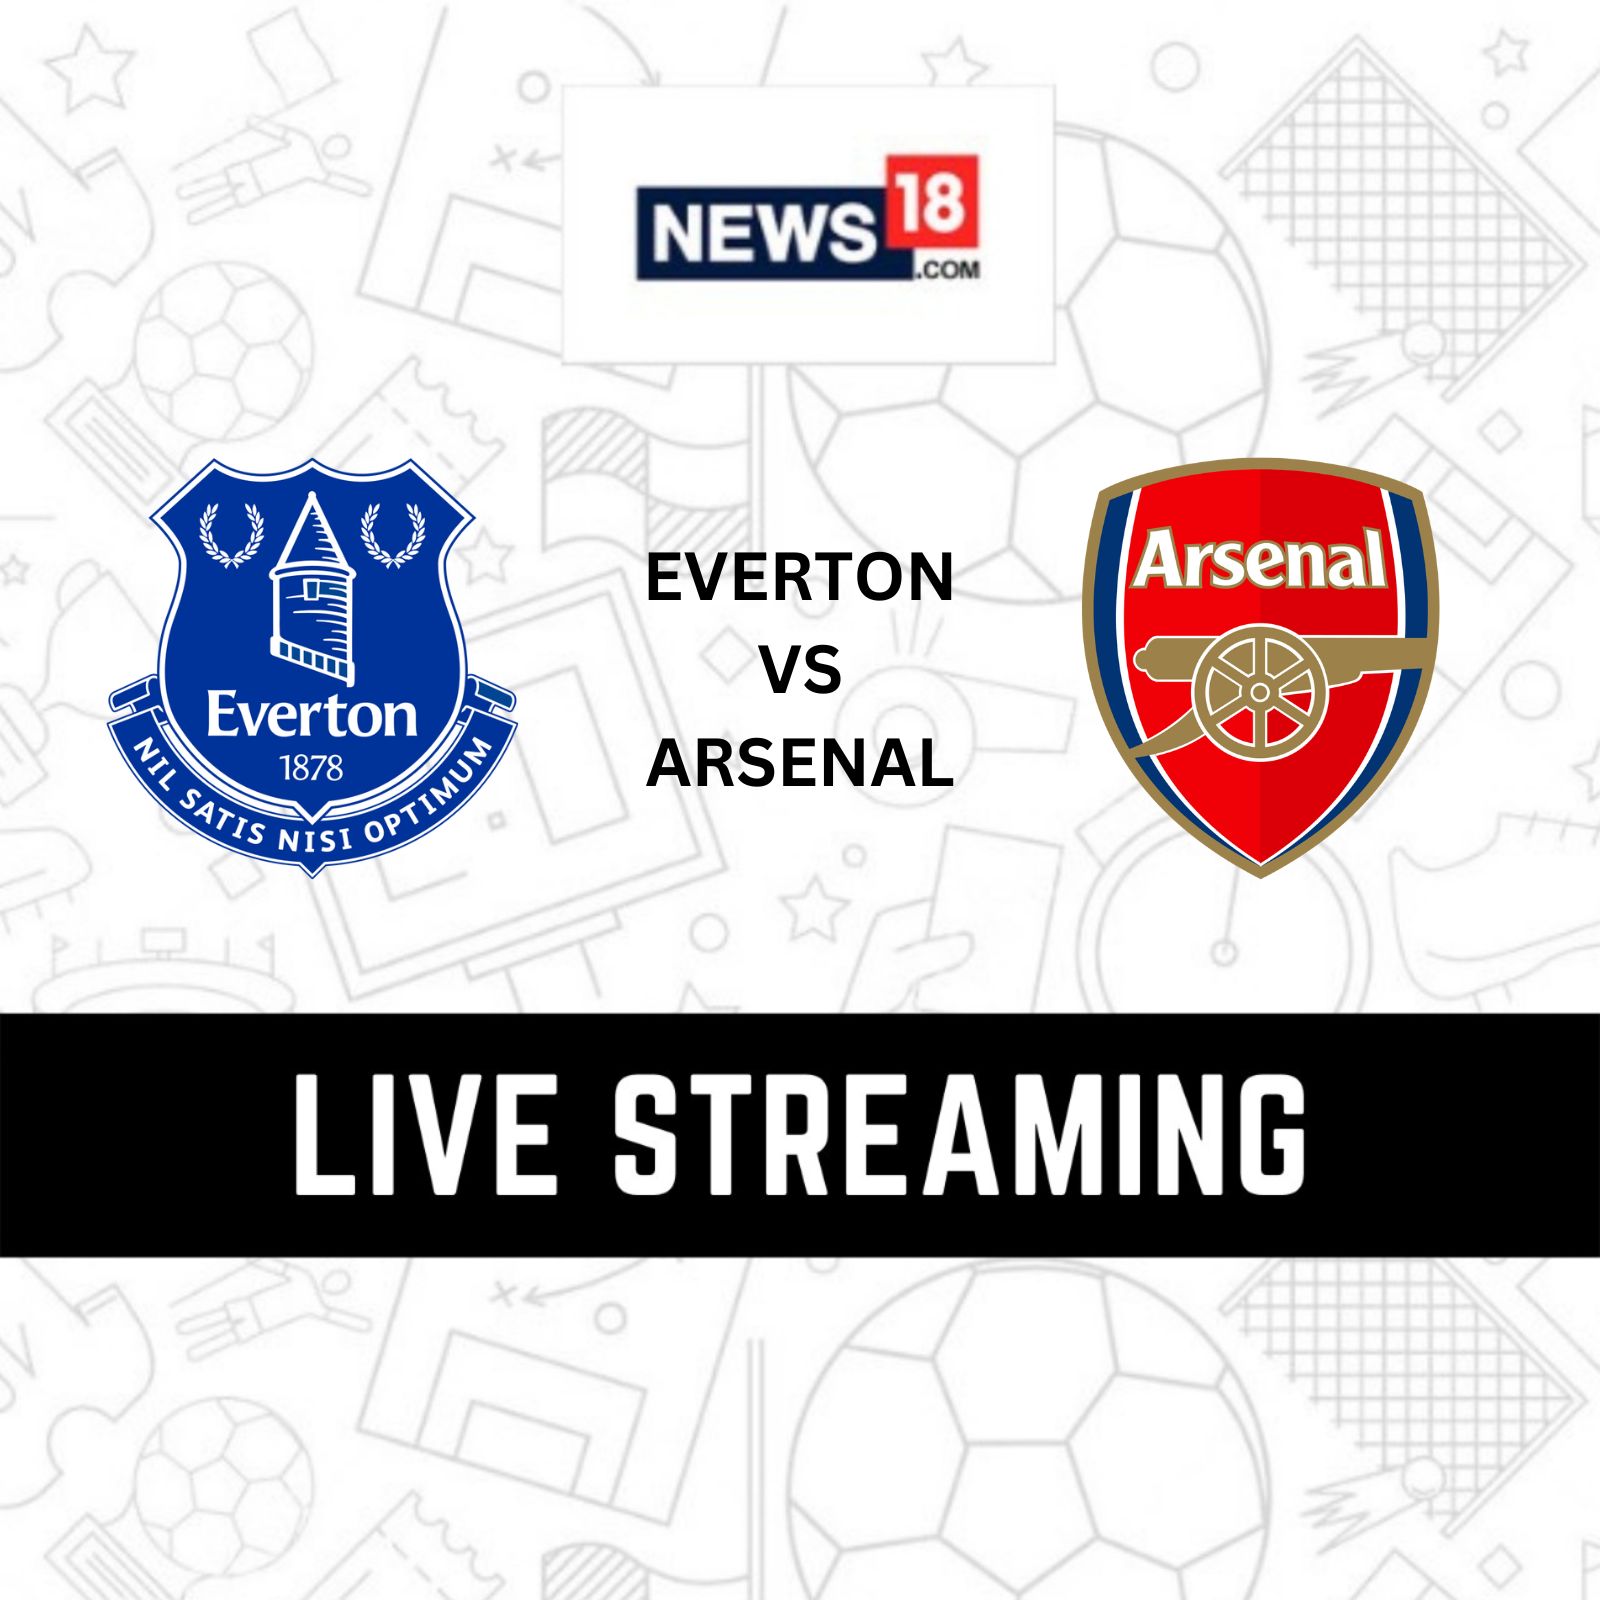 Everton vs Arsenal Premier League Live Streaming When and Where to Watch Everton vs Arsenal Live?